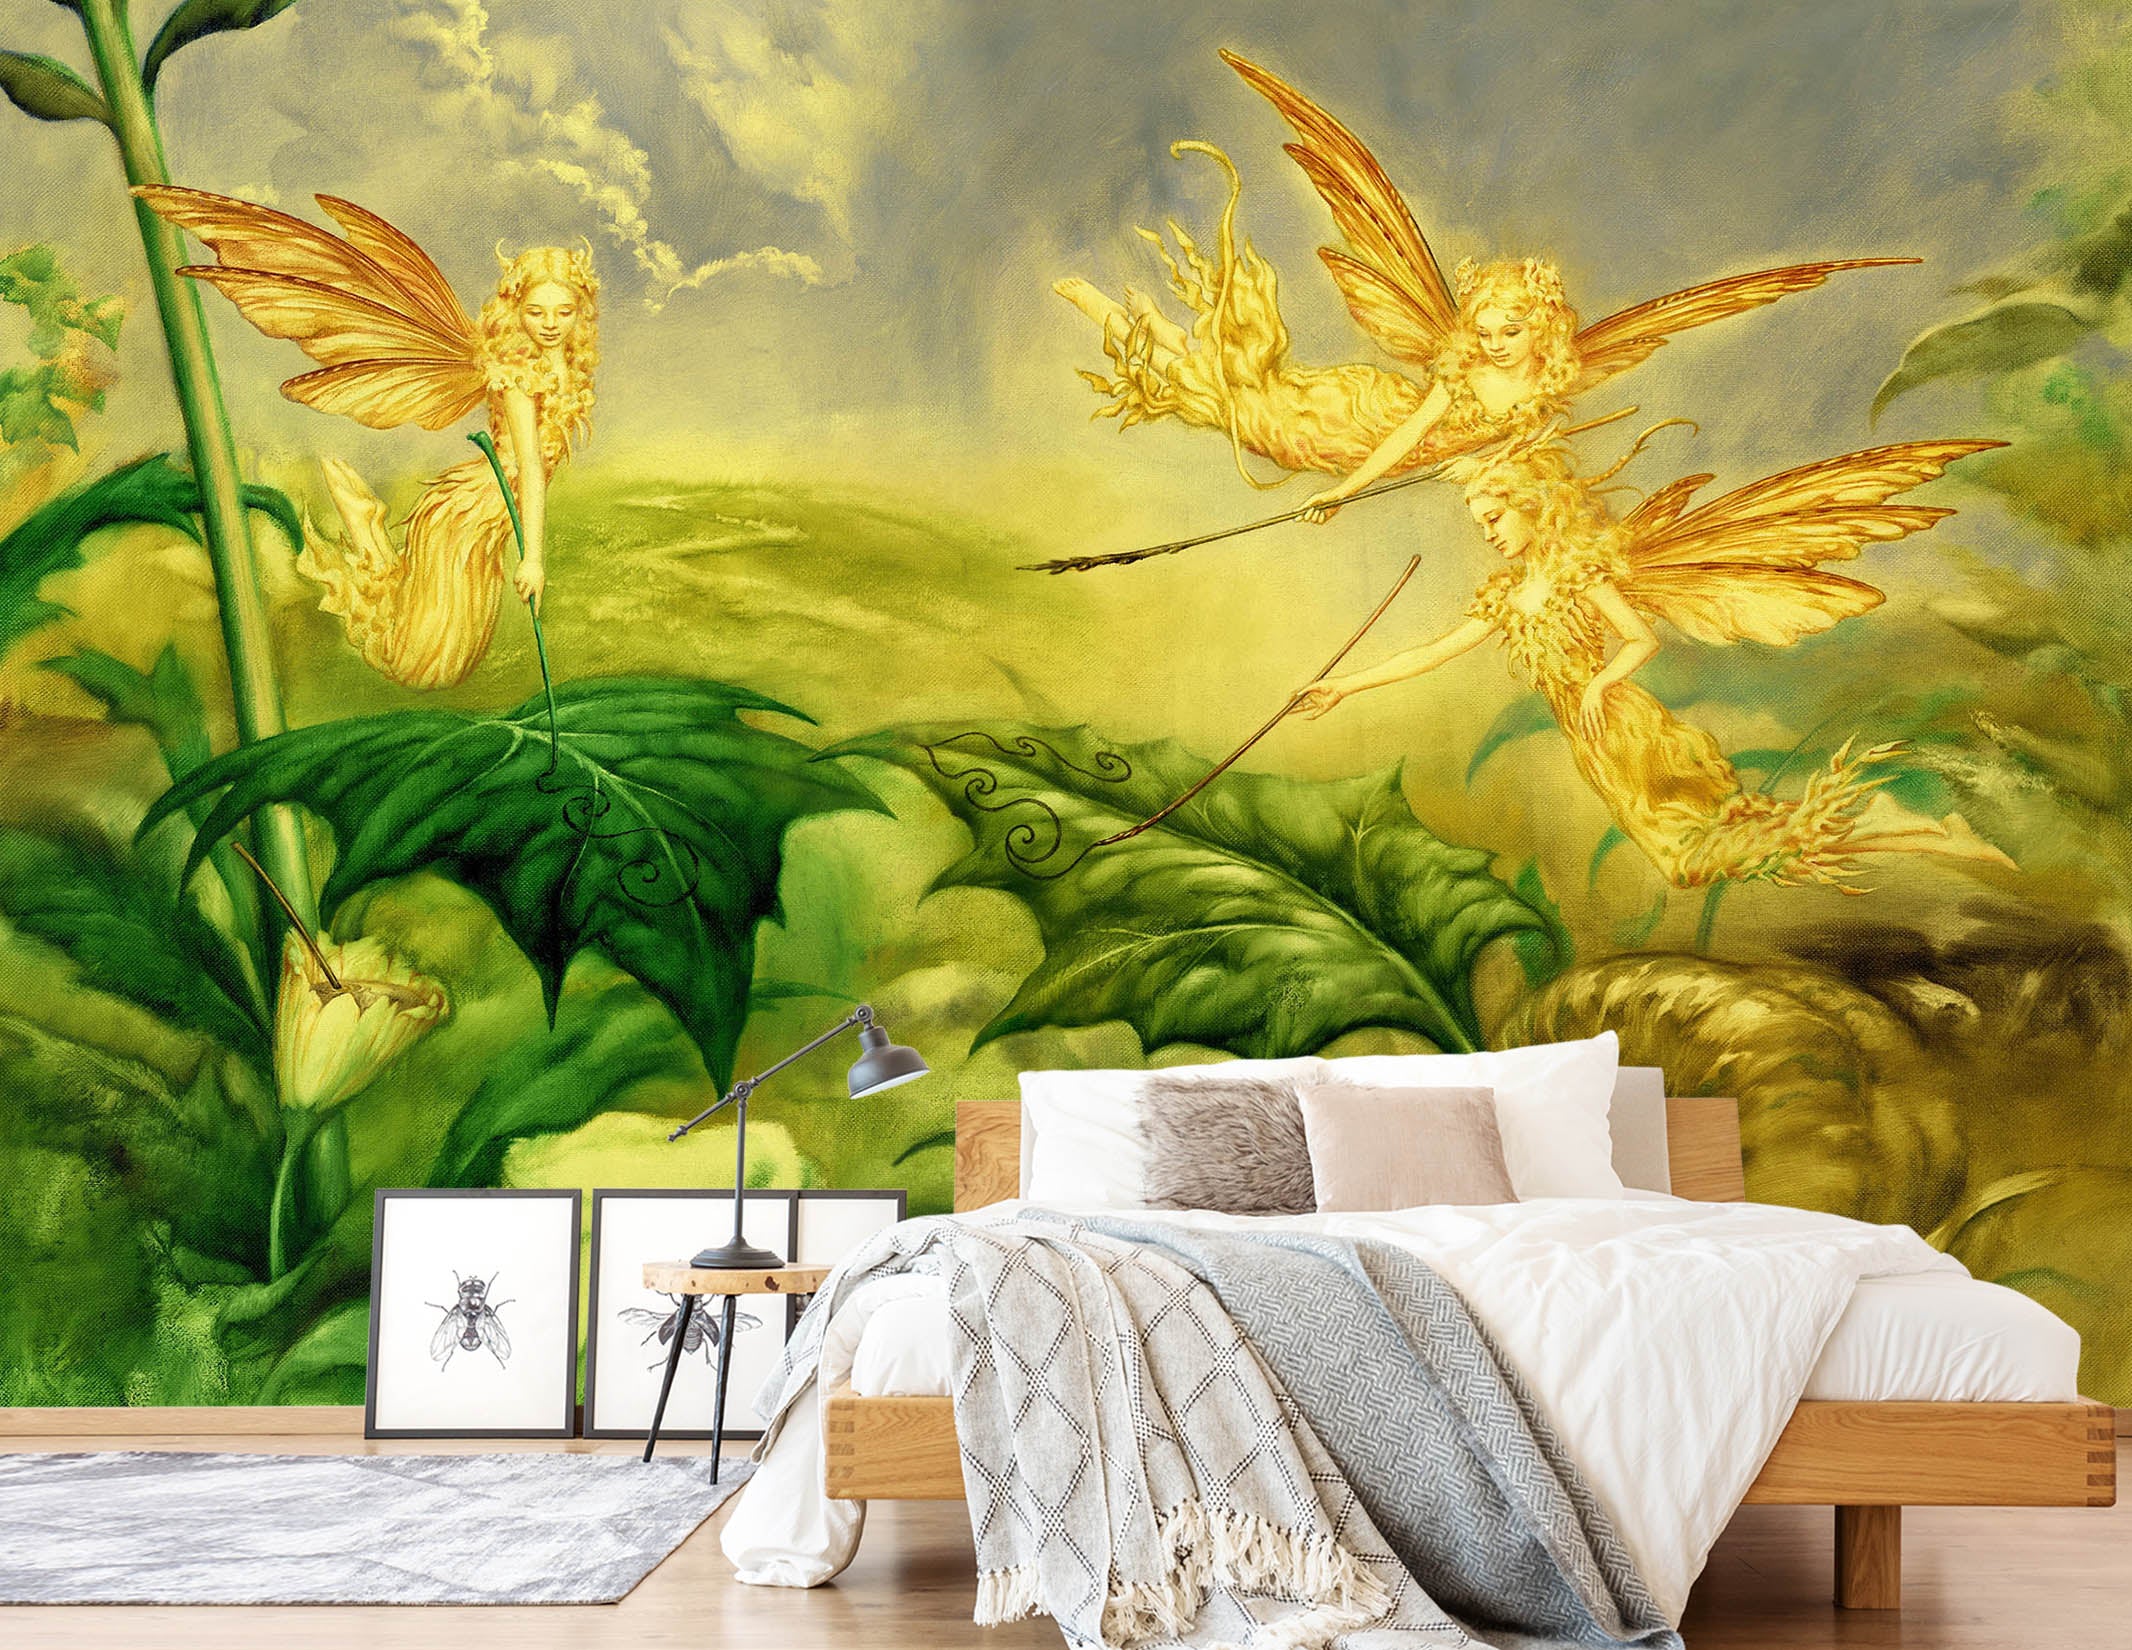 3D Golden Elf Leaves 7073 Ciruelo Wall Mural Wall Murals